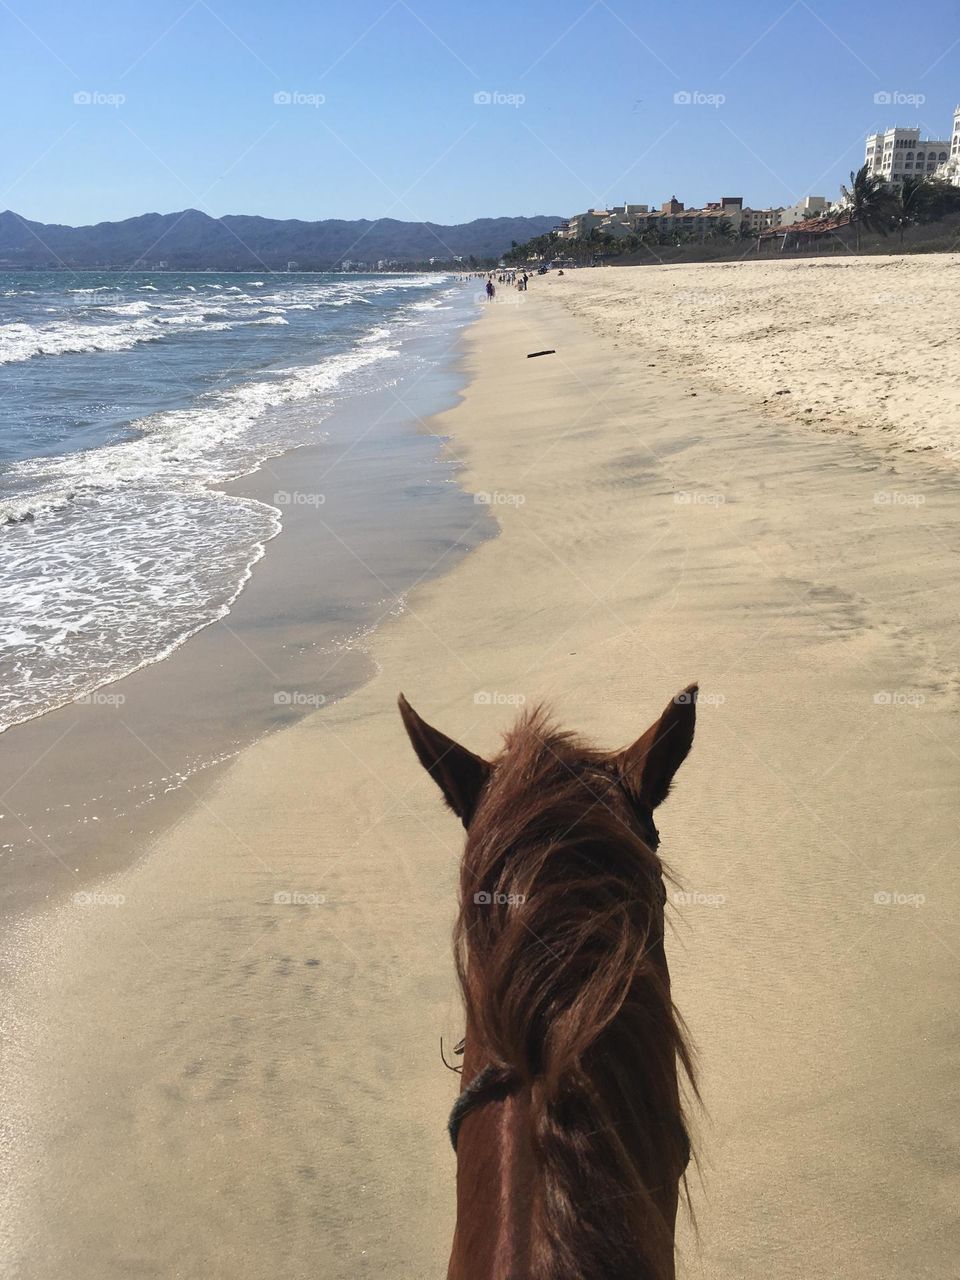 Coastline on horse back